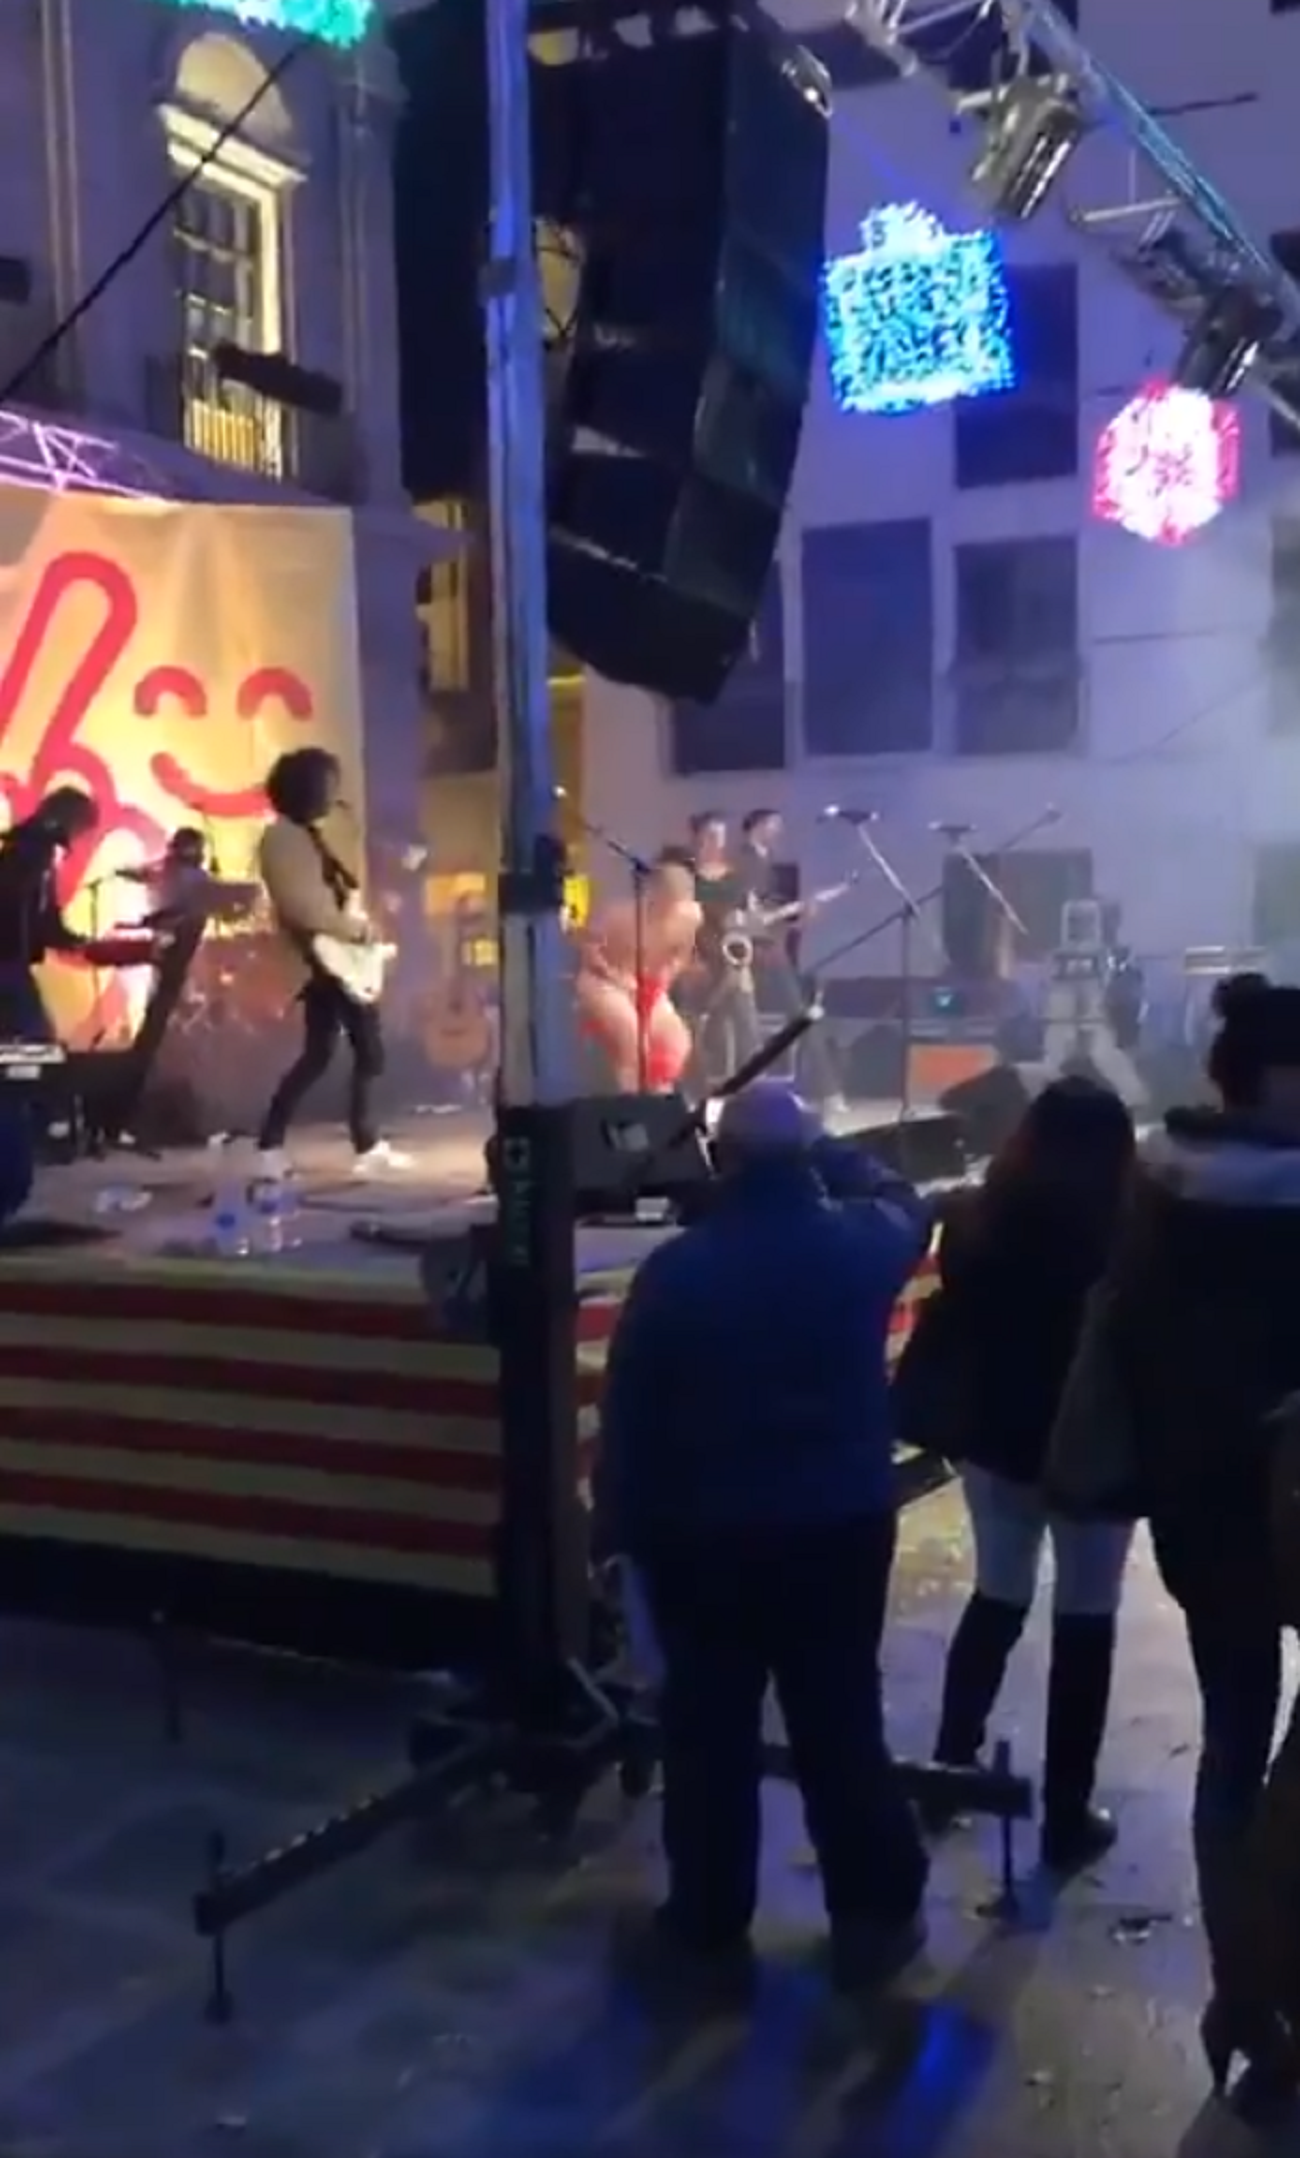 Vox denuncia al cantante del grupo Pepet i Marieta por "exhibicionismo" en un concierto